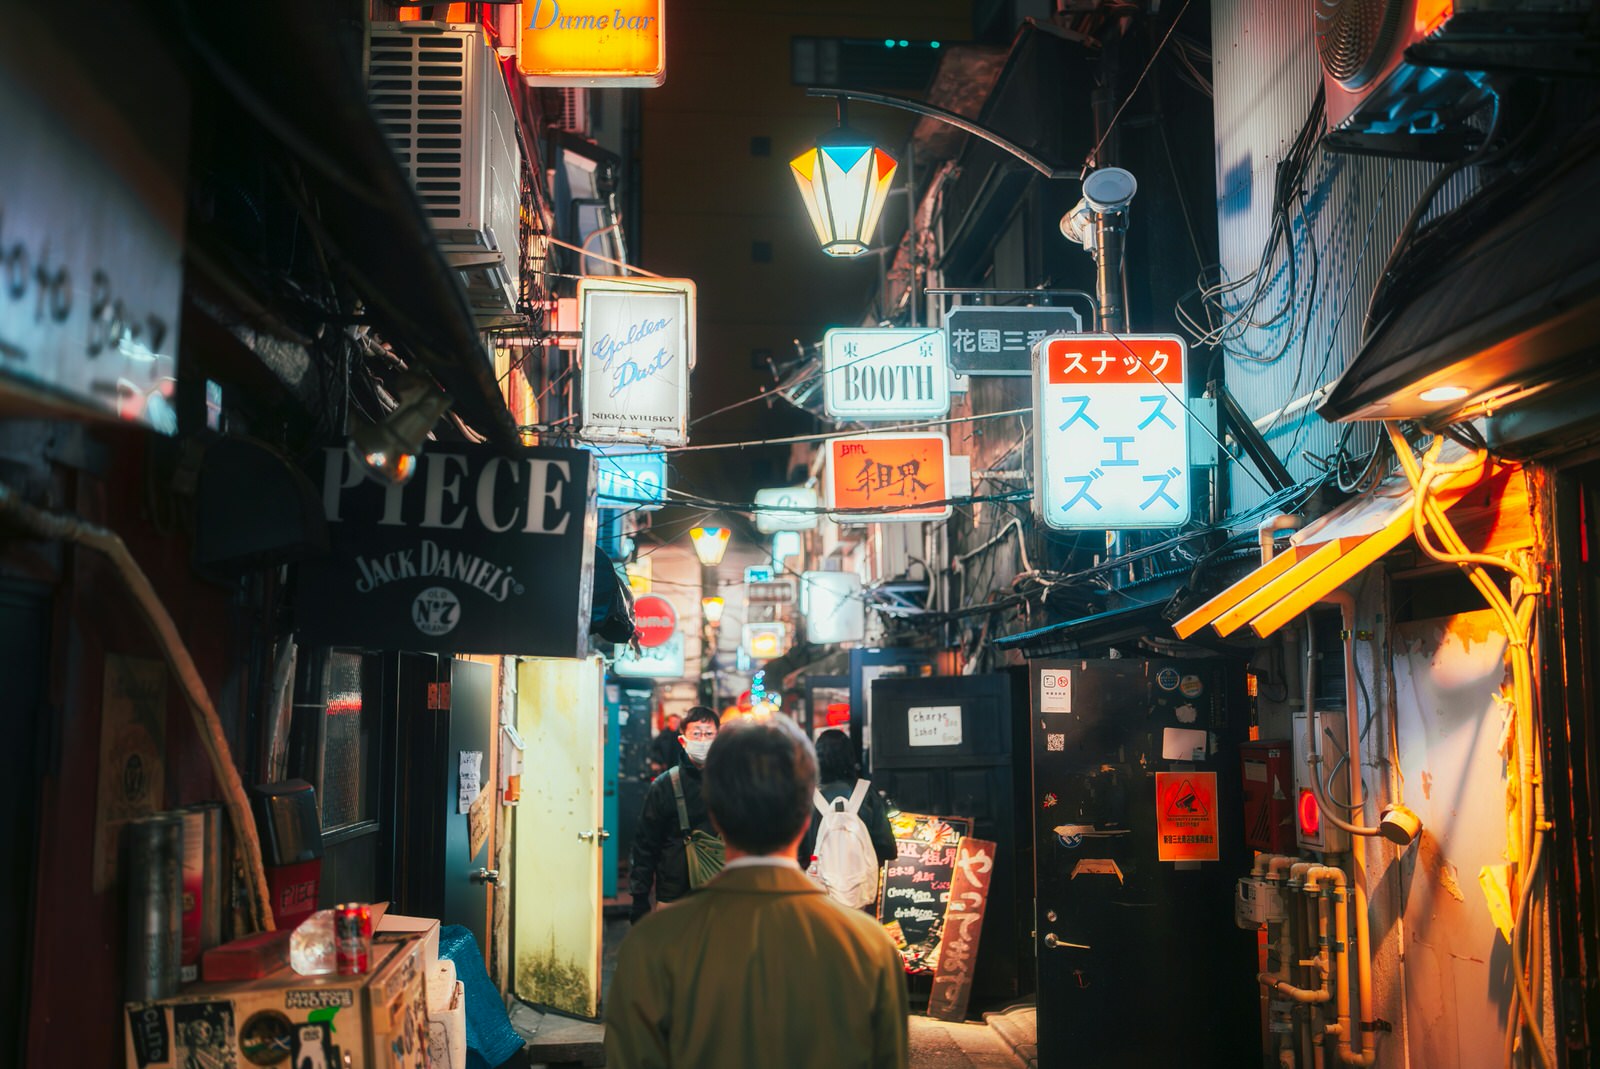 Ein Mann schaut in eine Gasse in Shinjuku, die mit Schildern in vielen verschiedenen Sprachen versehen ist.